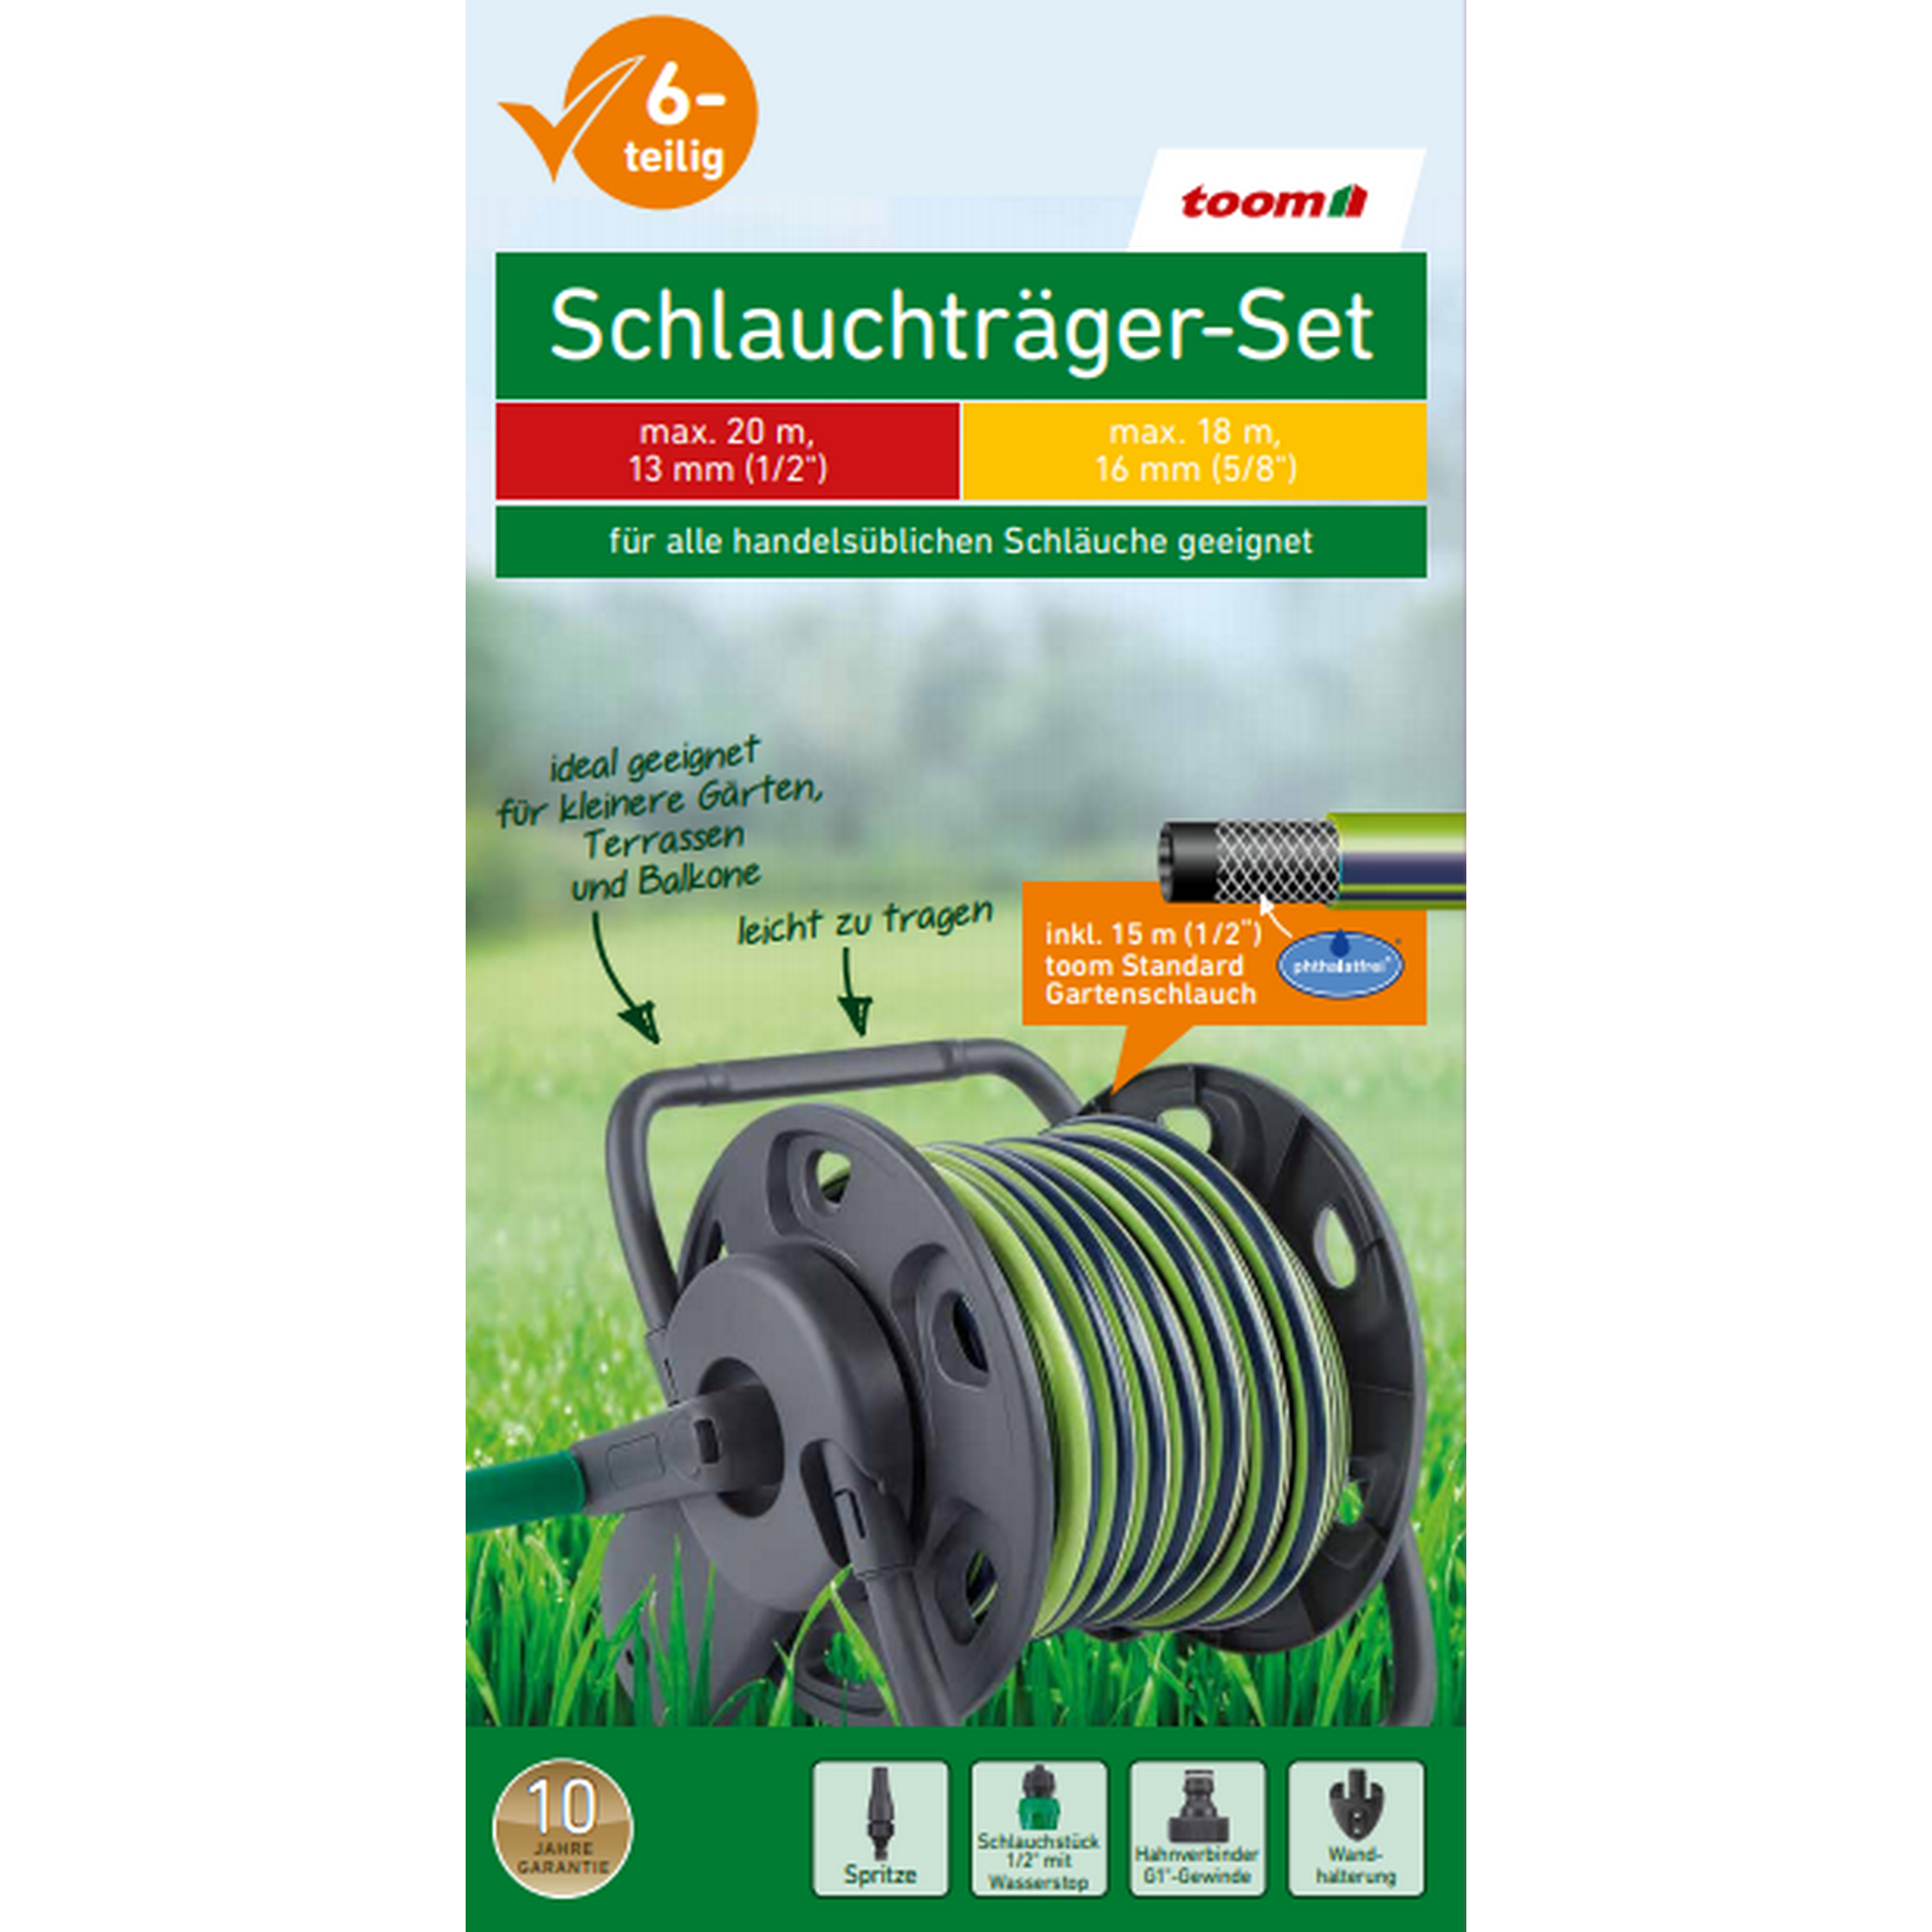 Schlauchträger-Set anthrazit/grün 15 m, 6-teilig + product picture